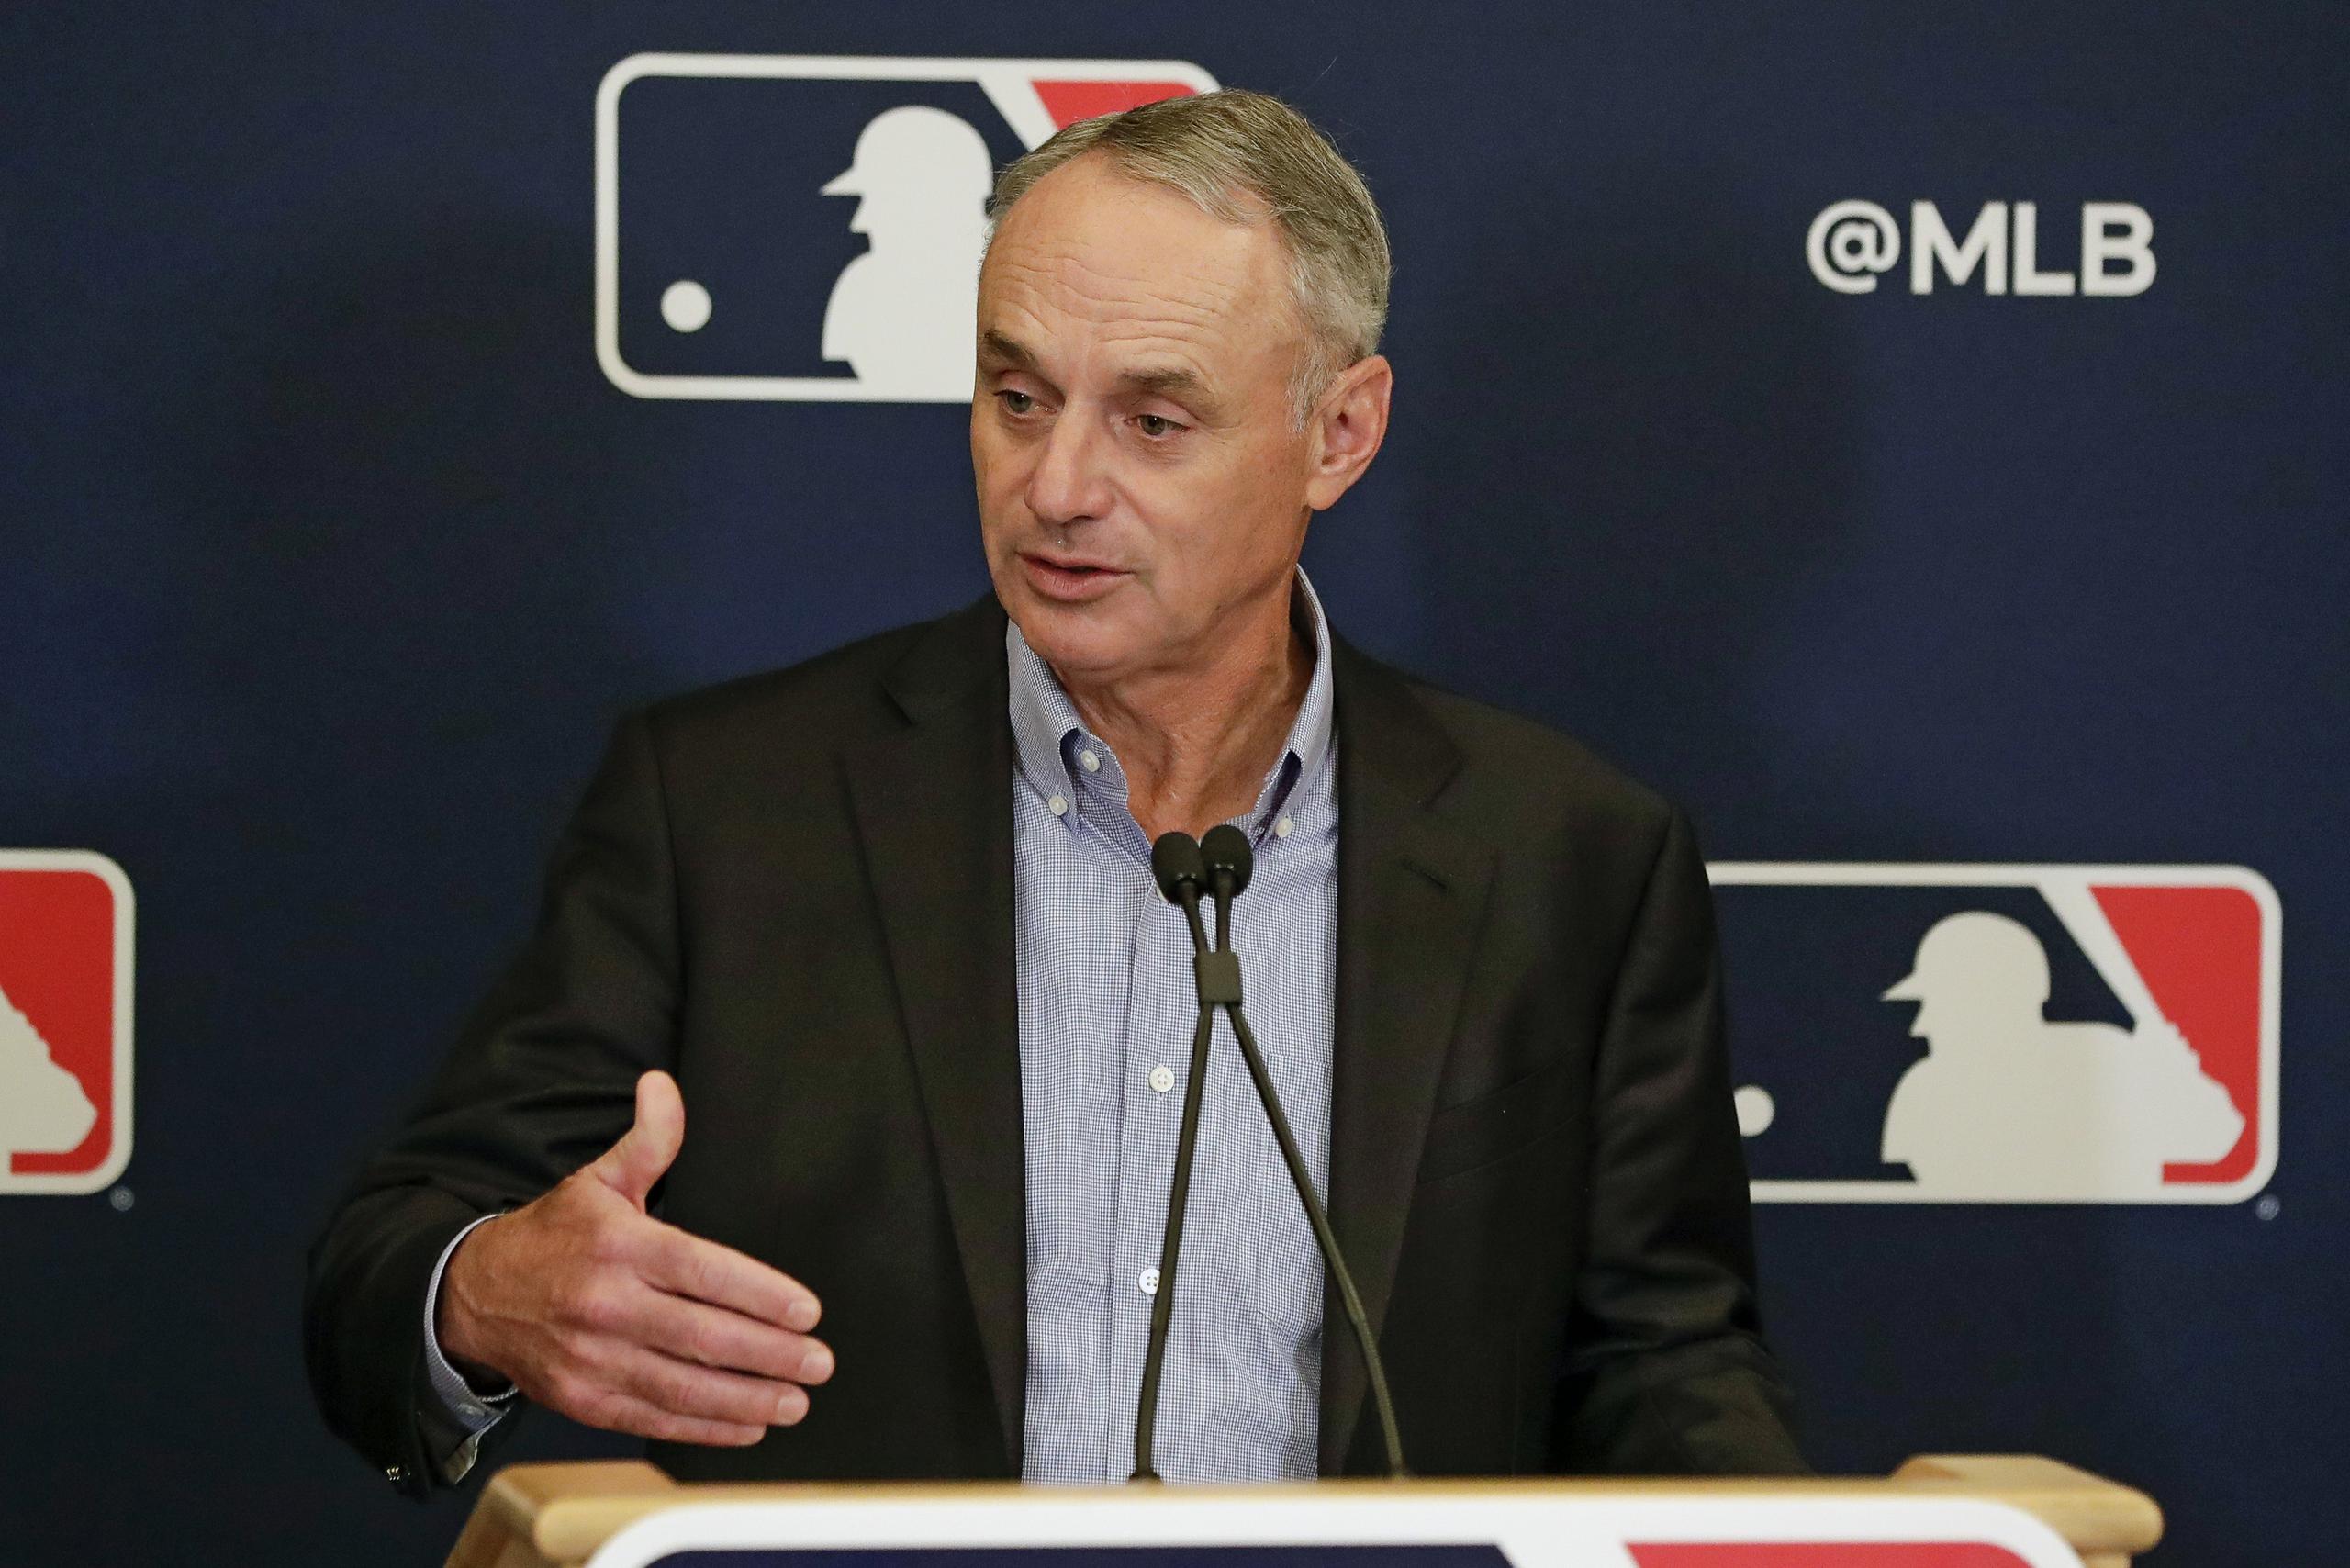 Pese a que los propietarios de equipos acordaron una división de ingresos de 50-50 con los jugadores, MLB no le hizo una propuesta económica formal el martes al gremio de jugadores.